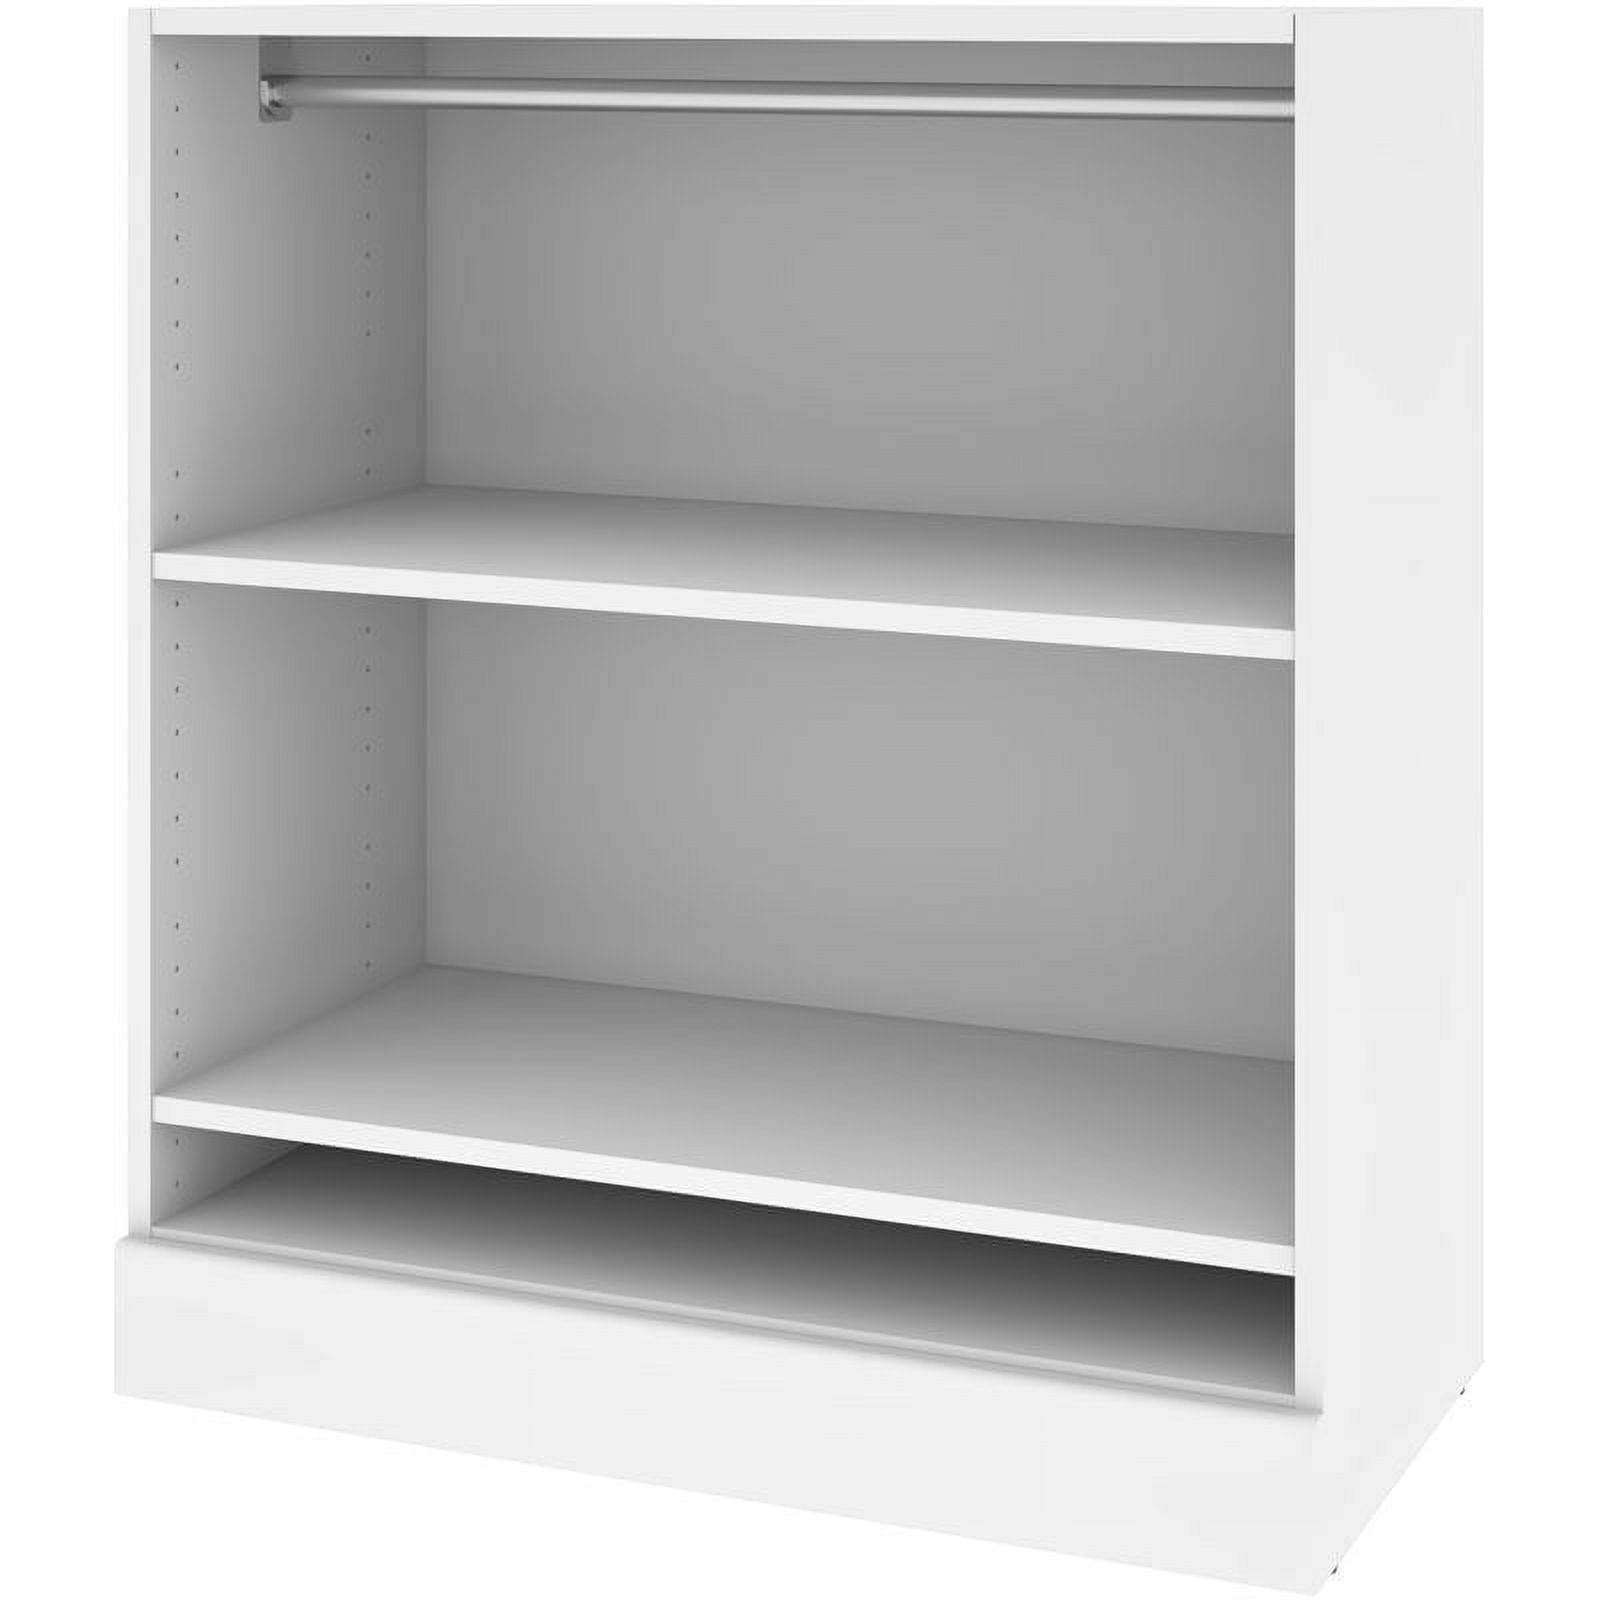 Bestar Versatile 36W Corner Engineered Wood Closet Organizer in White